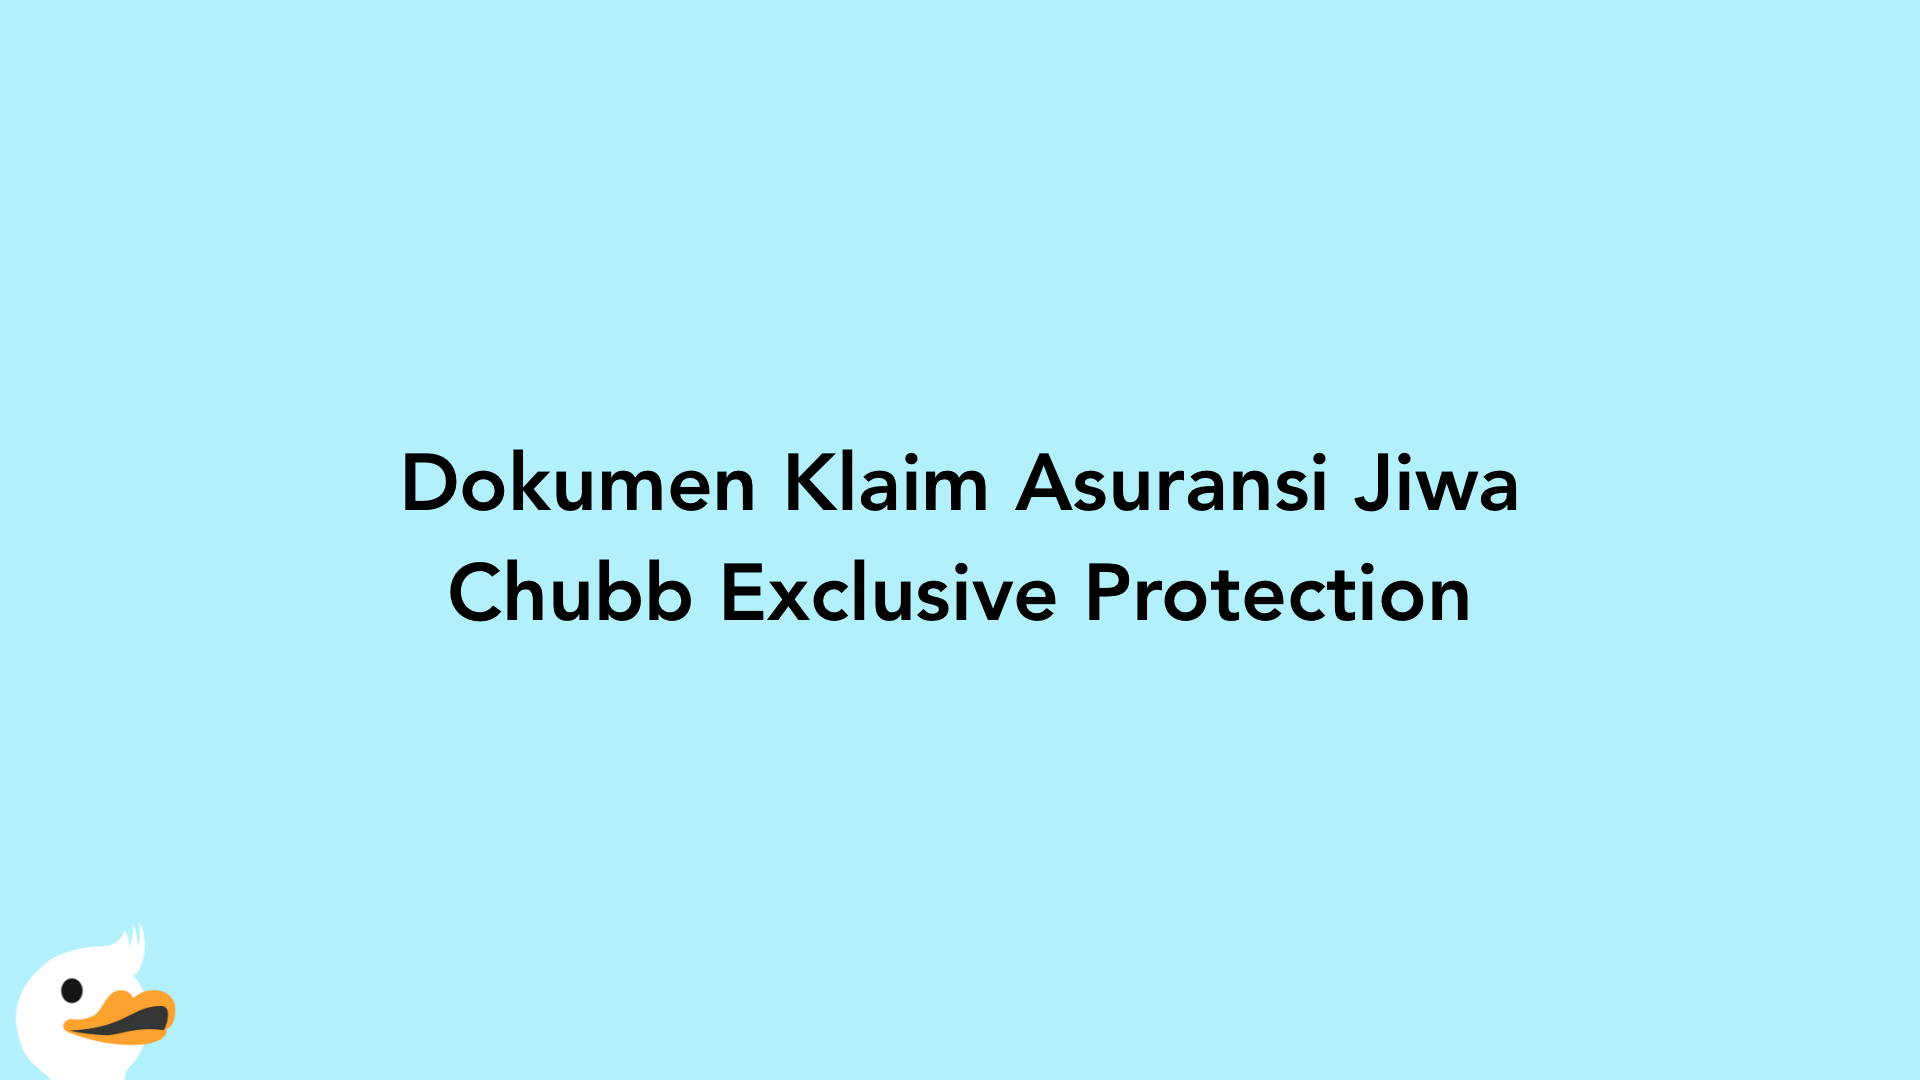 Dokumen Klaim Asuransi Jiwa Chubb Exclusive Protection